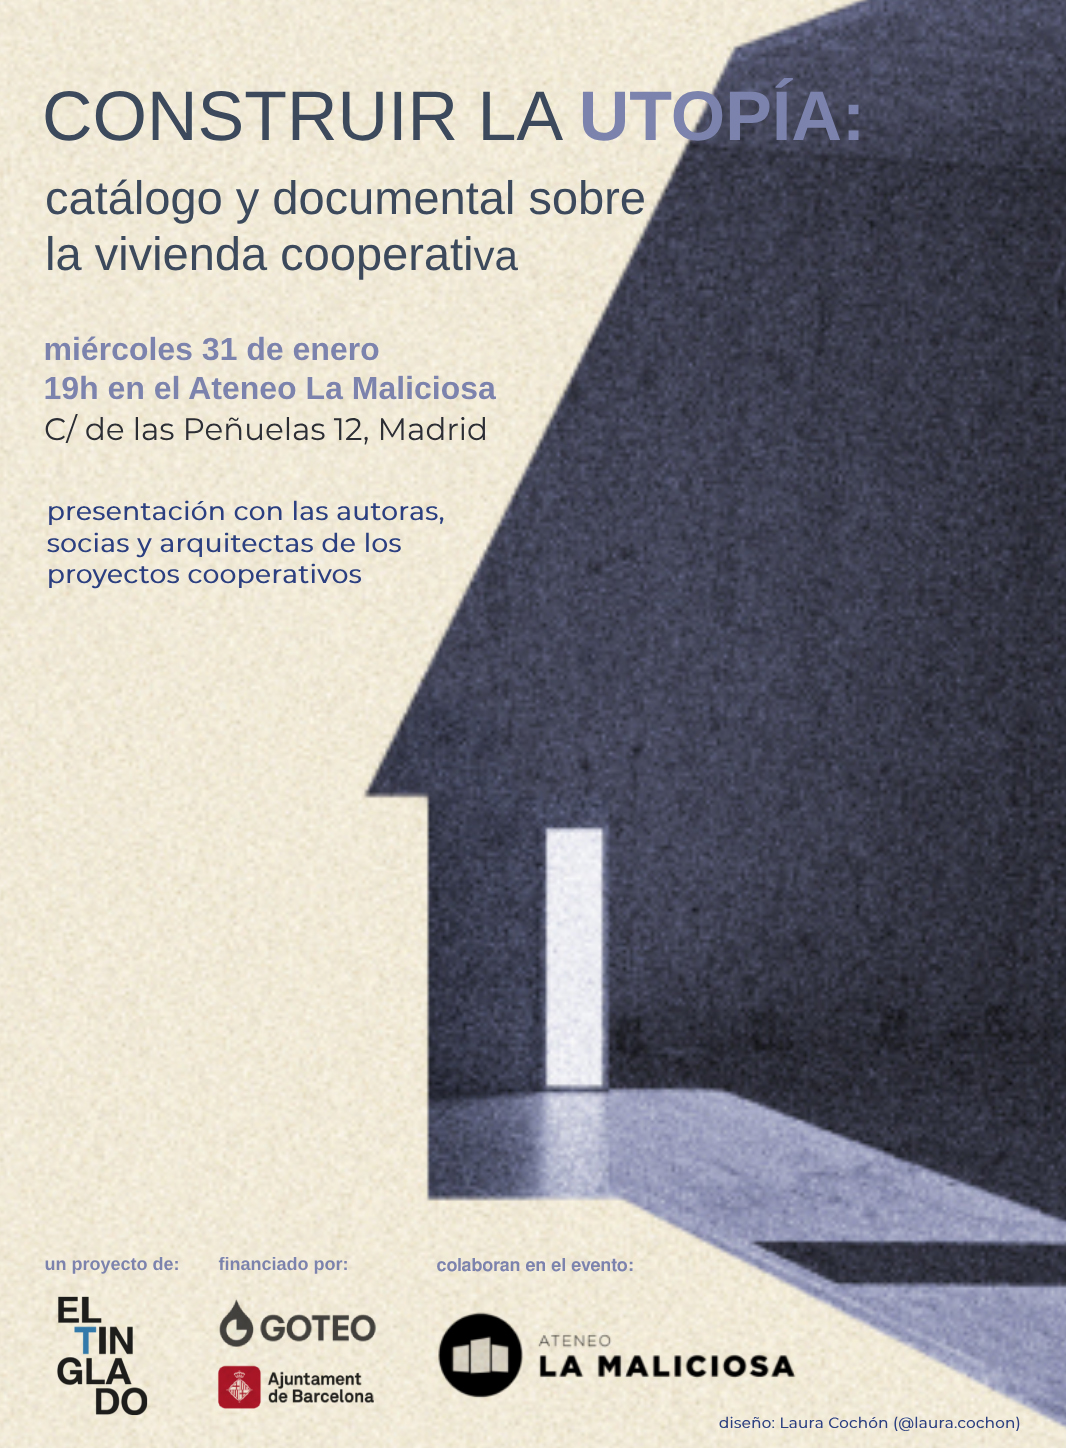 Construir la utopía: catálogo sobre vivienda cooperativa